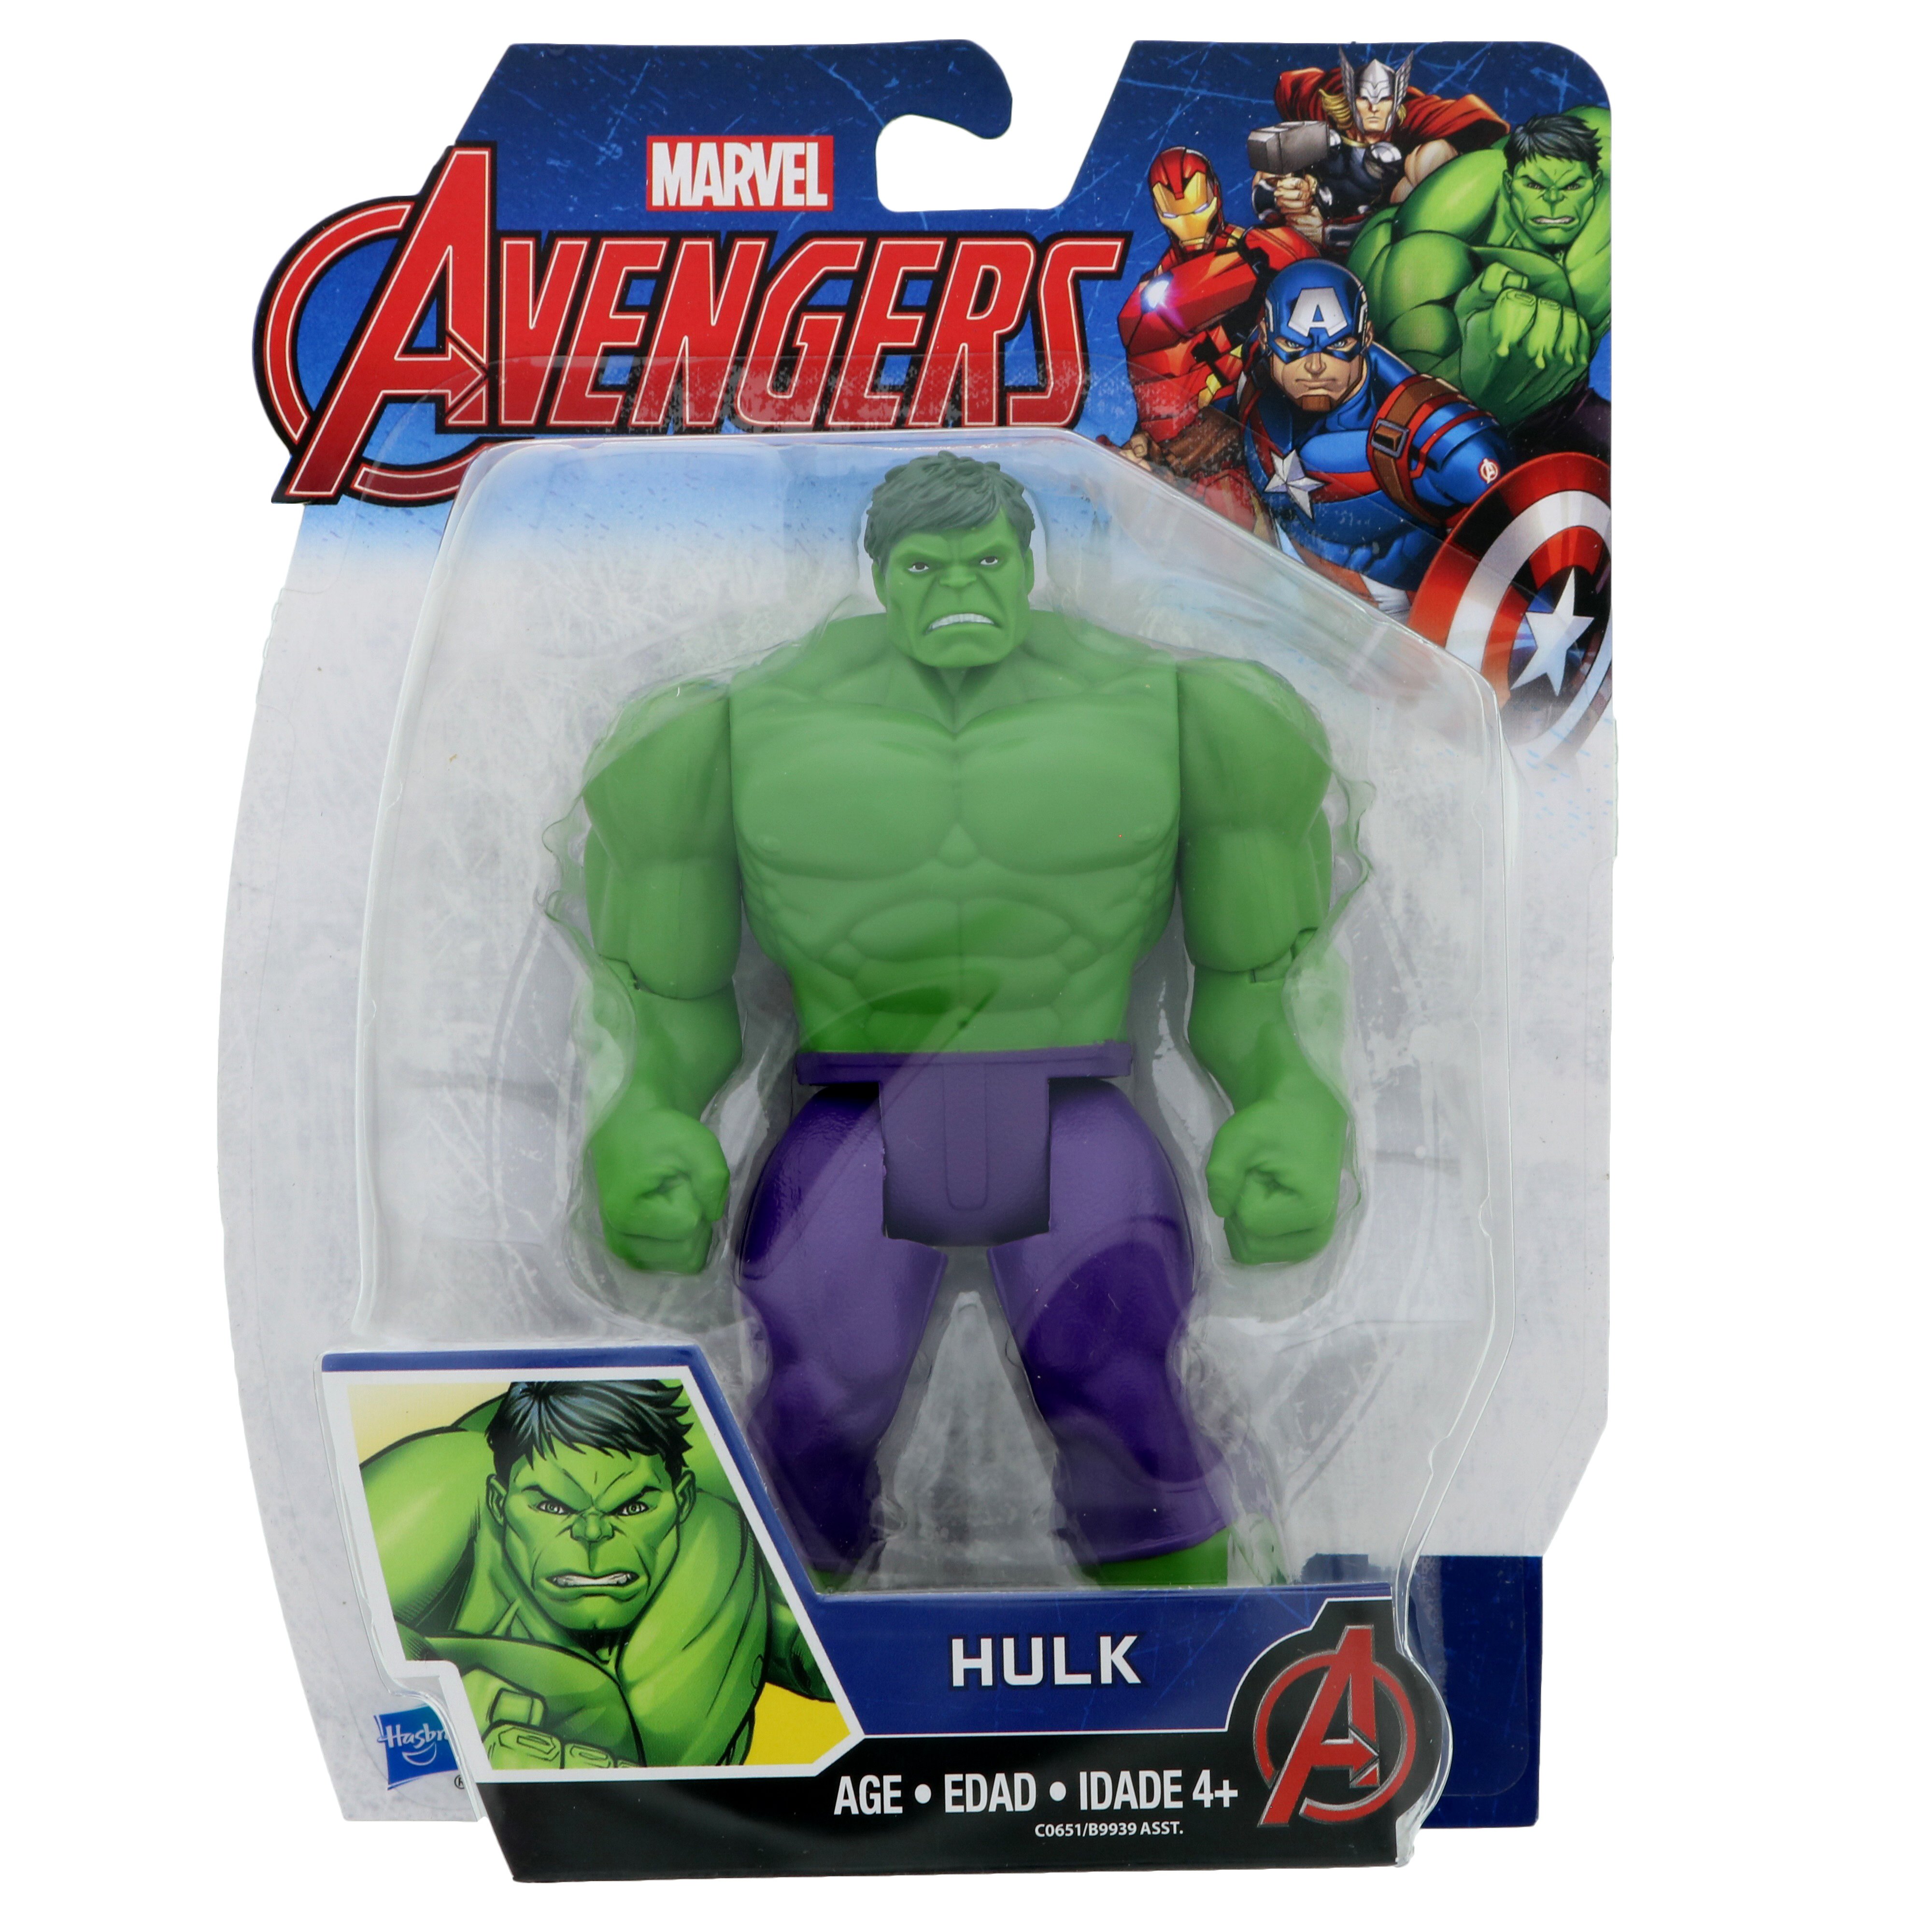 Marvel Avengers Hulk 6-in Basic Action Figure Hasbro B9939 